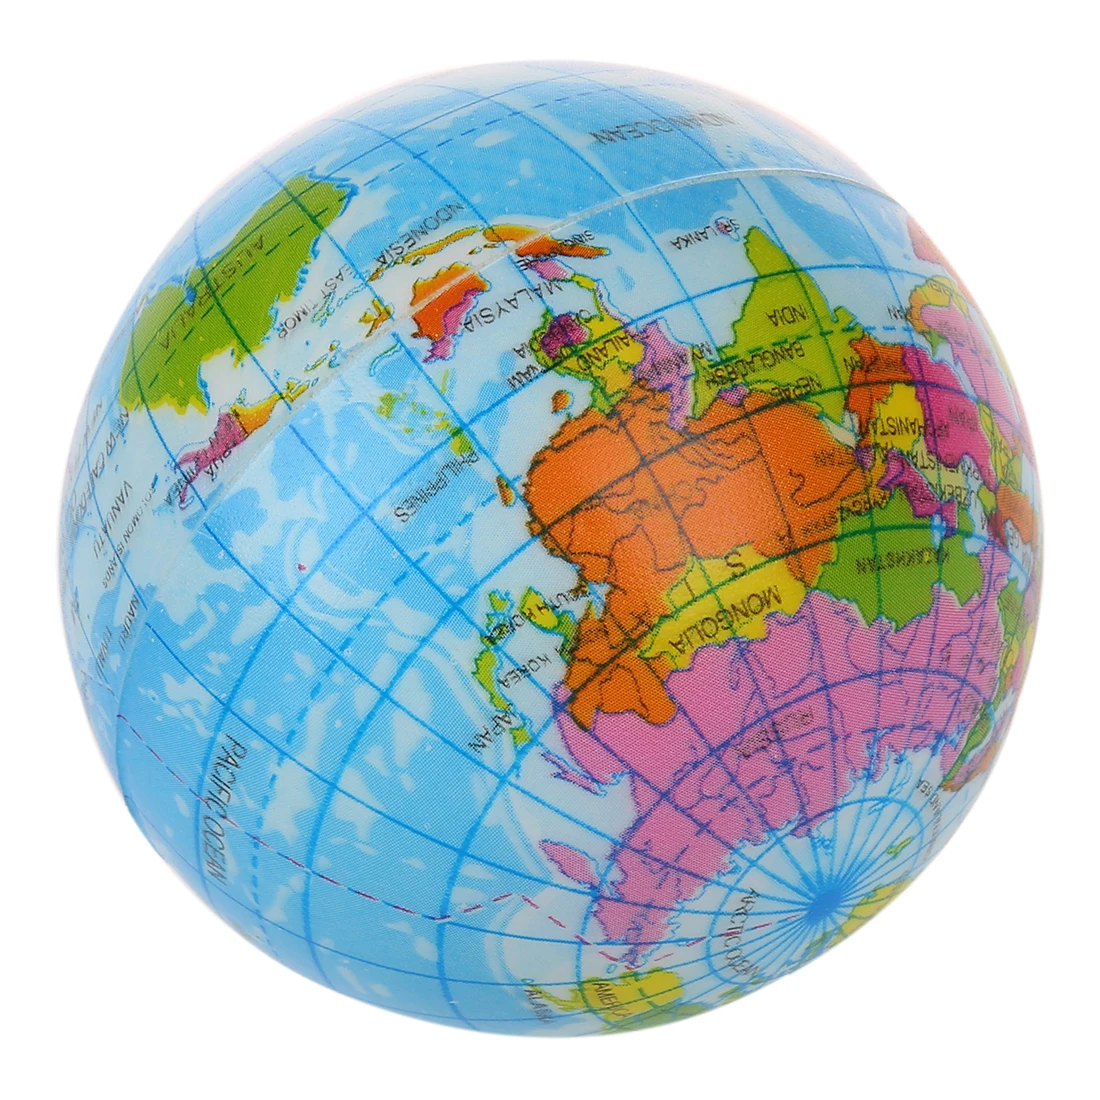 Новая карта мира пена Глобус снятие стресса надувной мяч атлас географическая игрушка